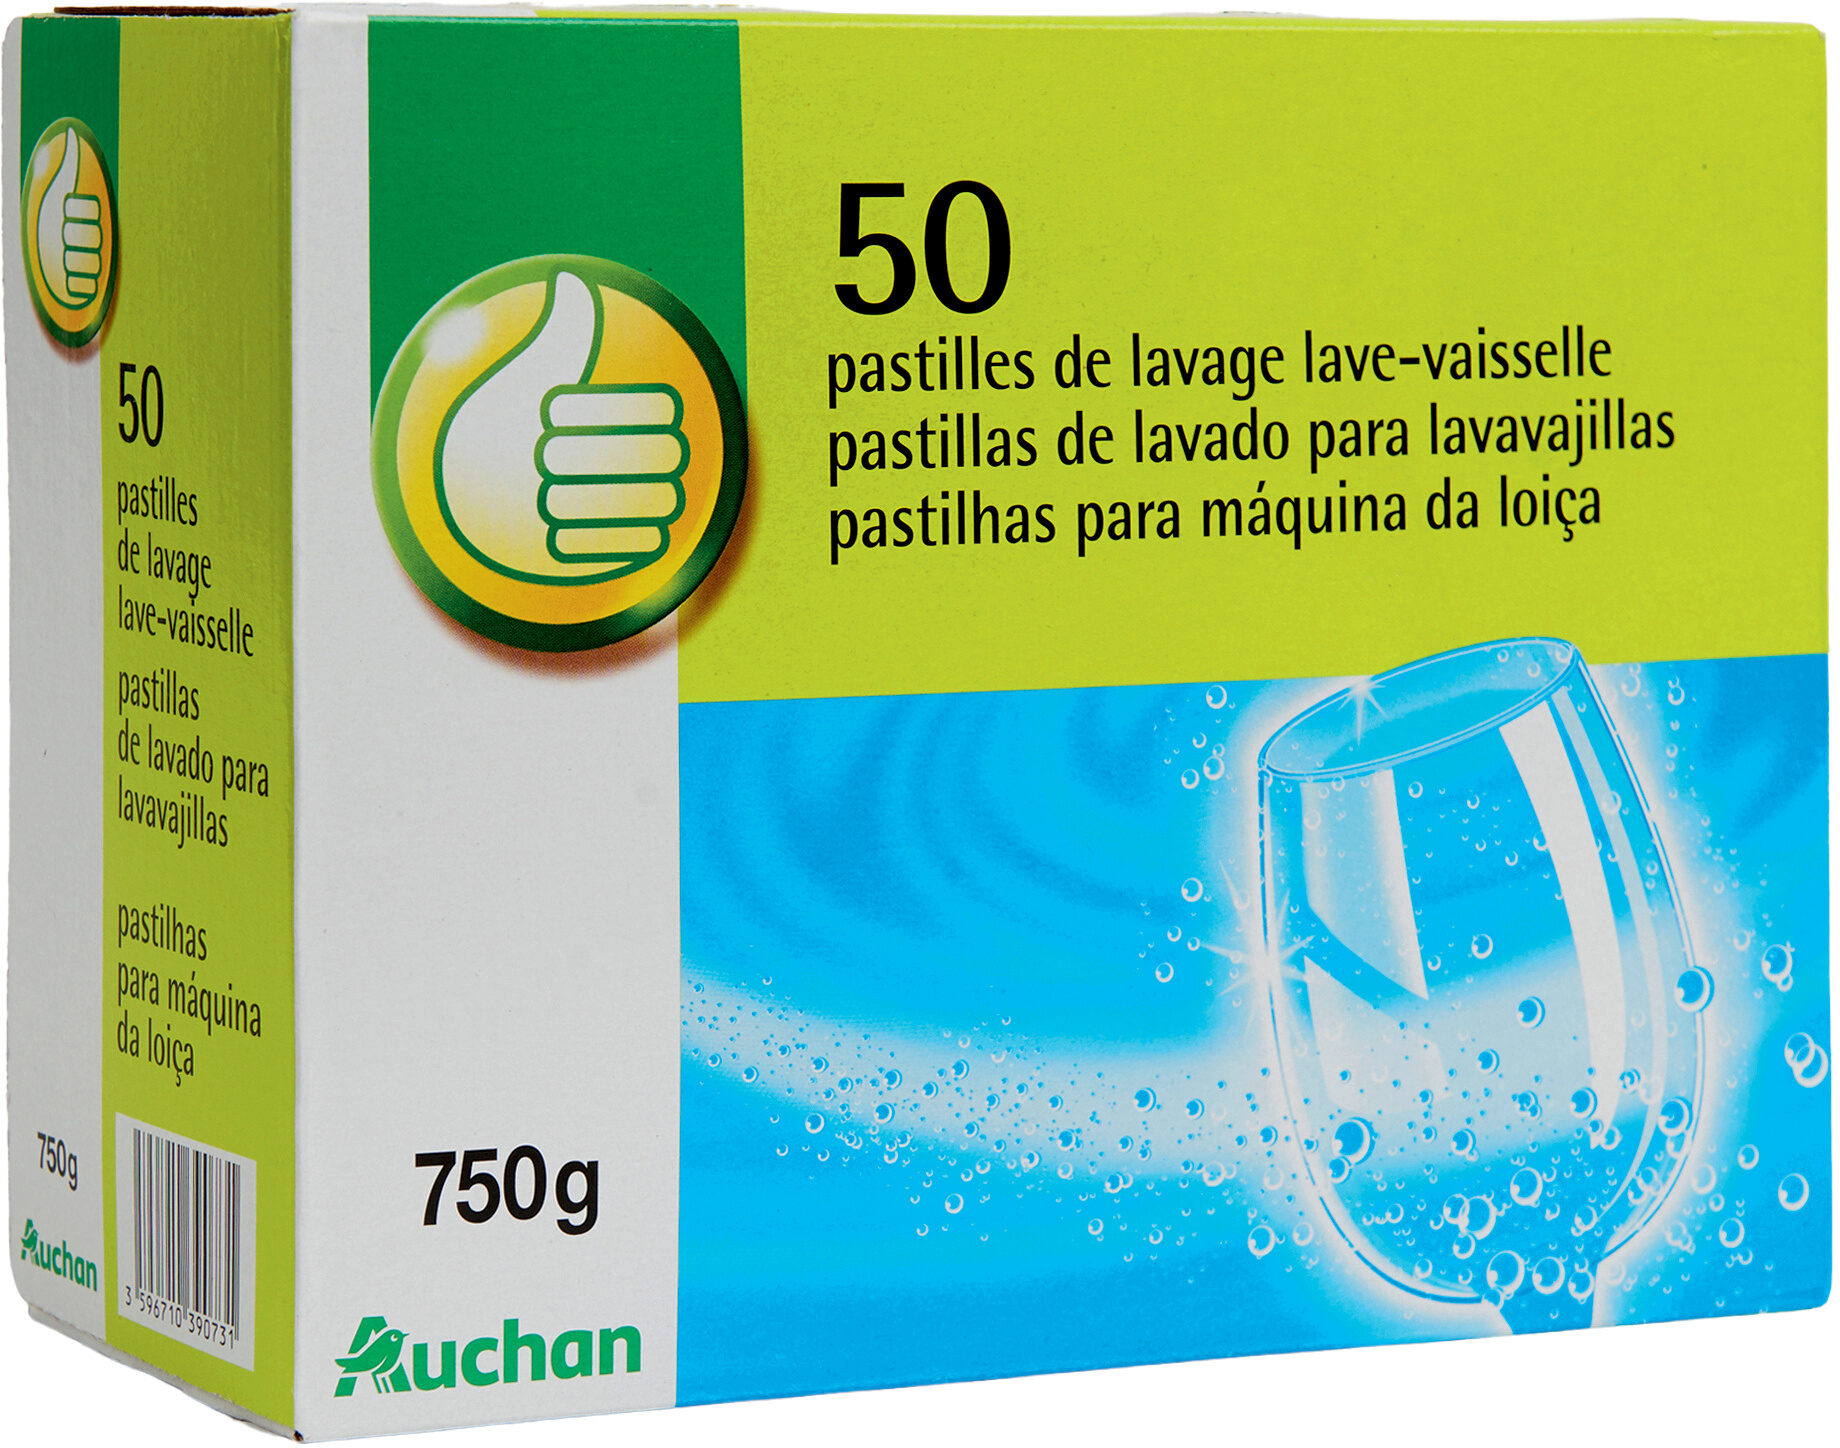 50 pastilles de lavage lave-vaisselle - Product - fr